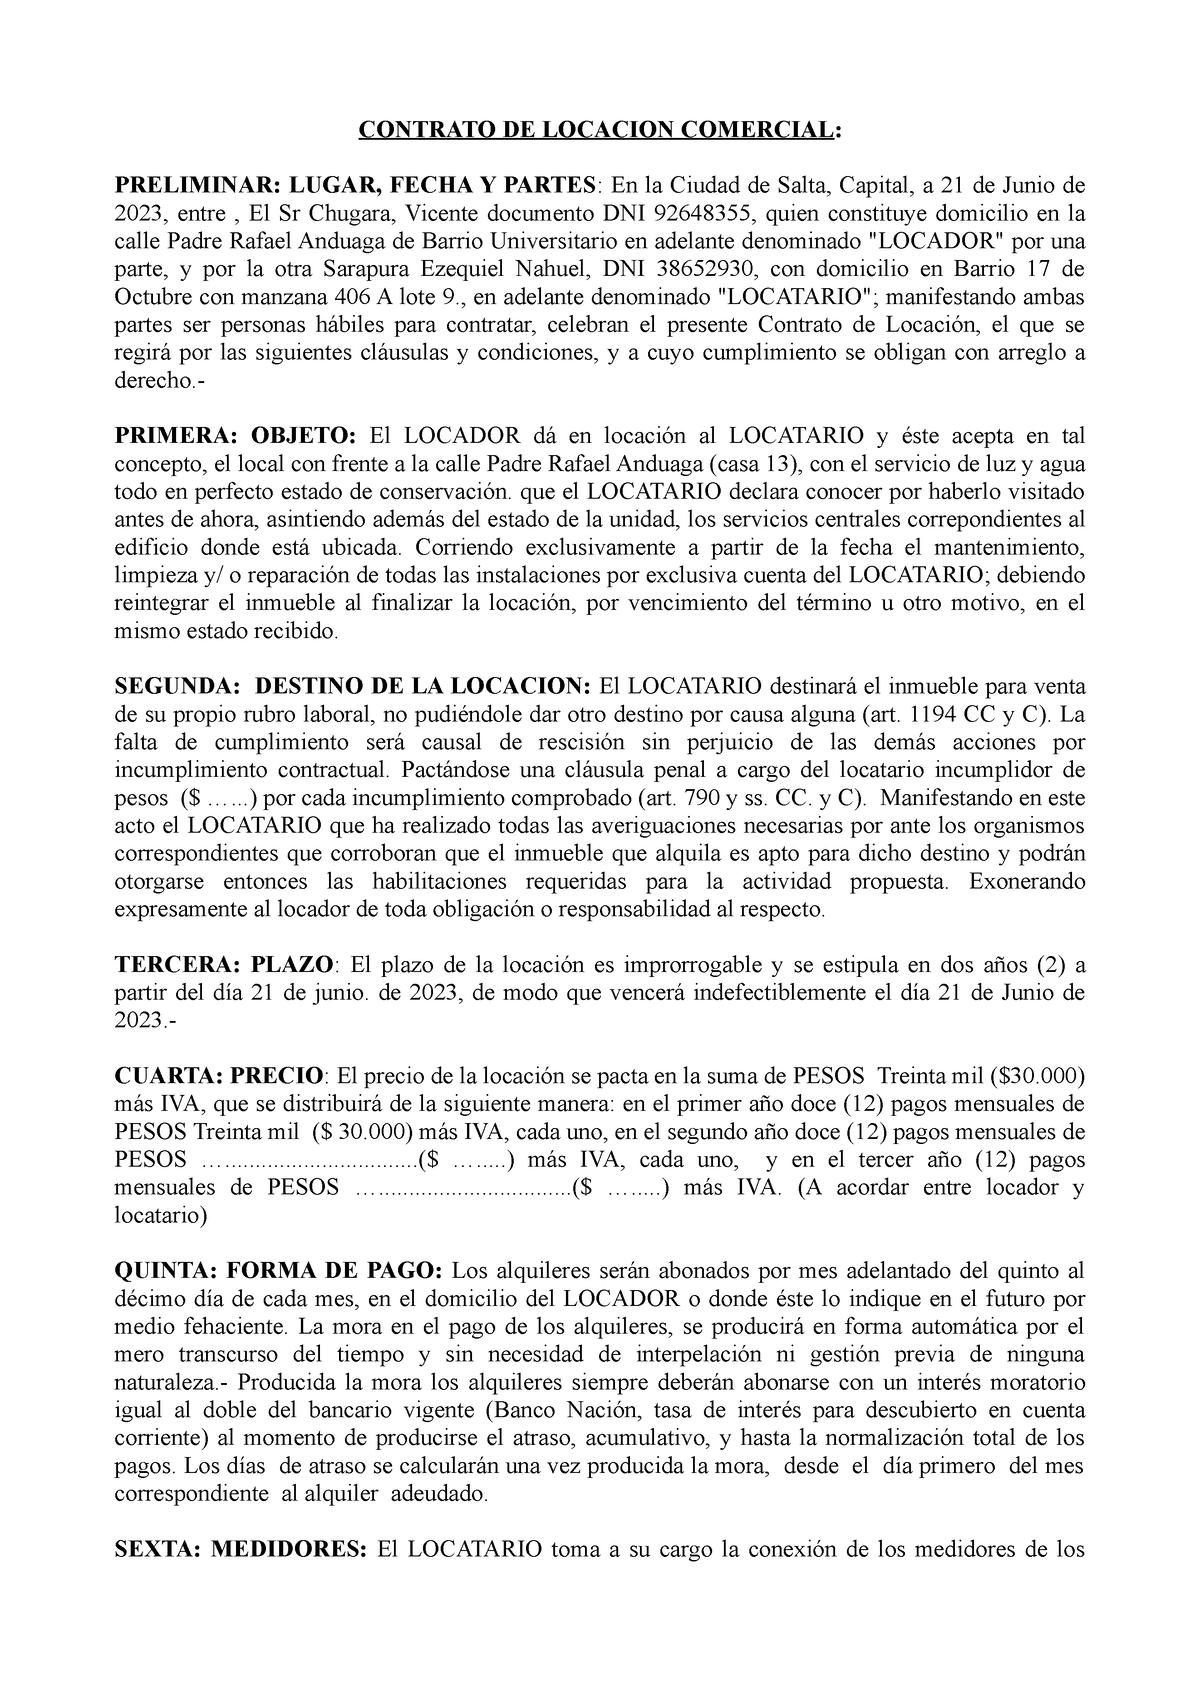 Contrato Locacion Comercial Modelo Basico Ccyc Contrato De Locacion Comercial Preliminar 3513